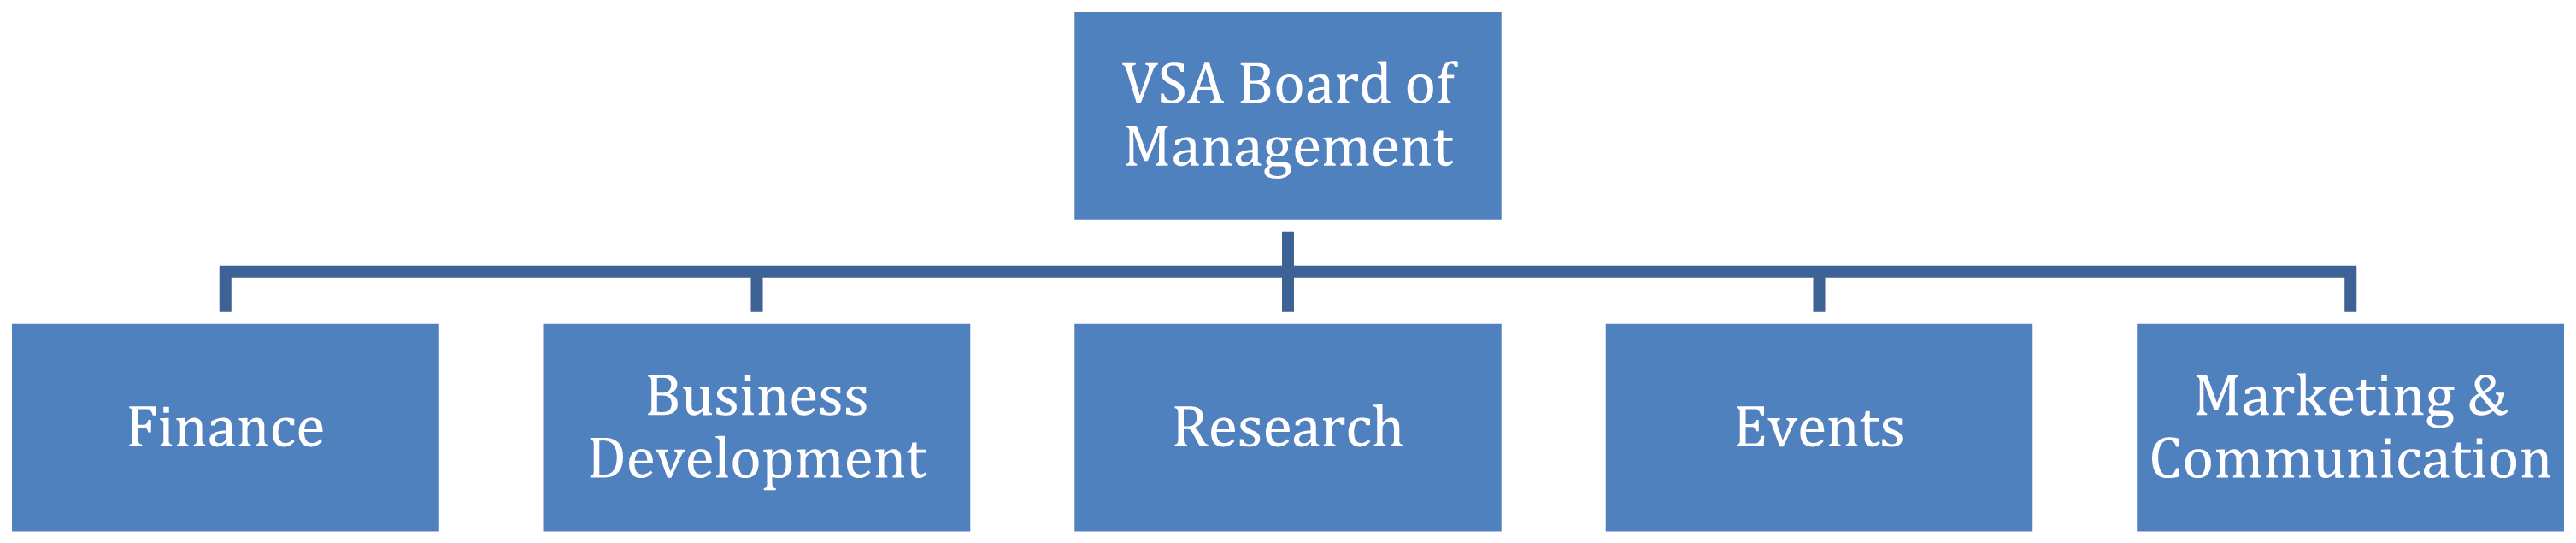 VSA organizational structure